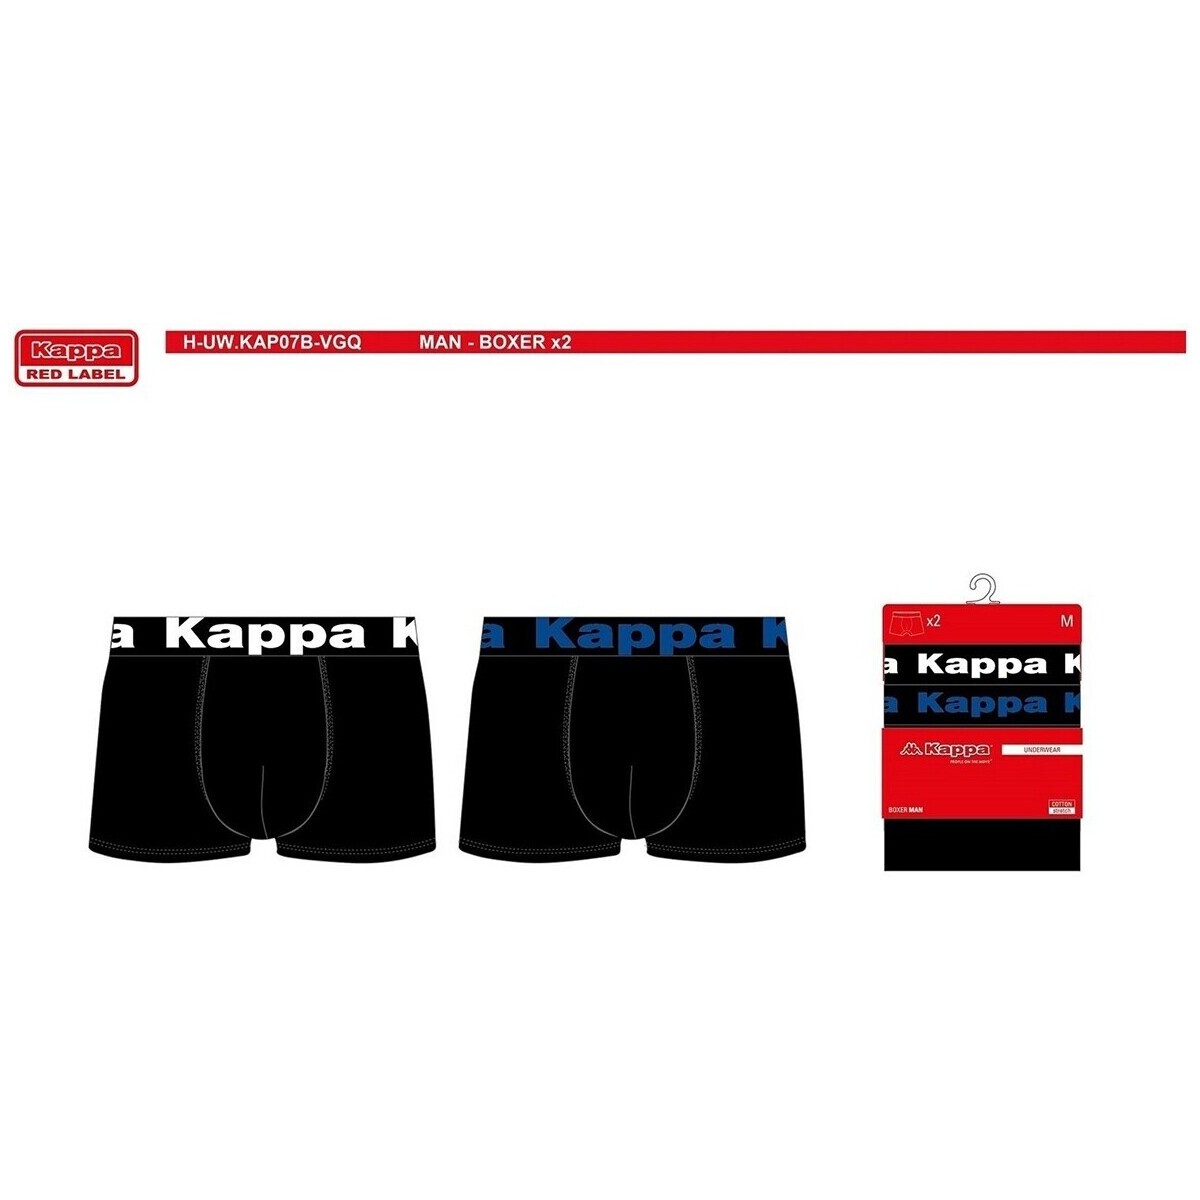 Kappa Multicolore Pack de 4 0230 EFEvU9iW